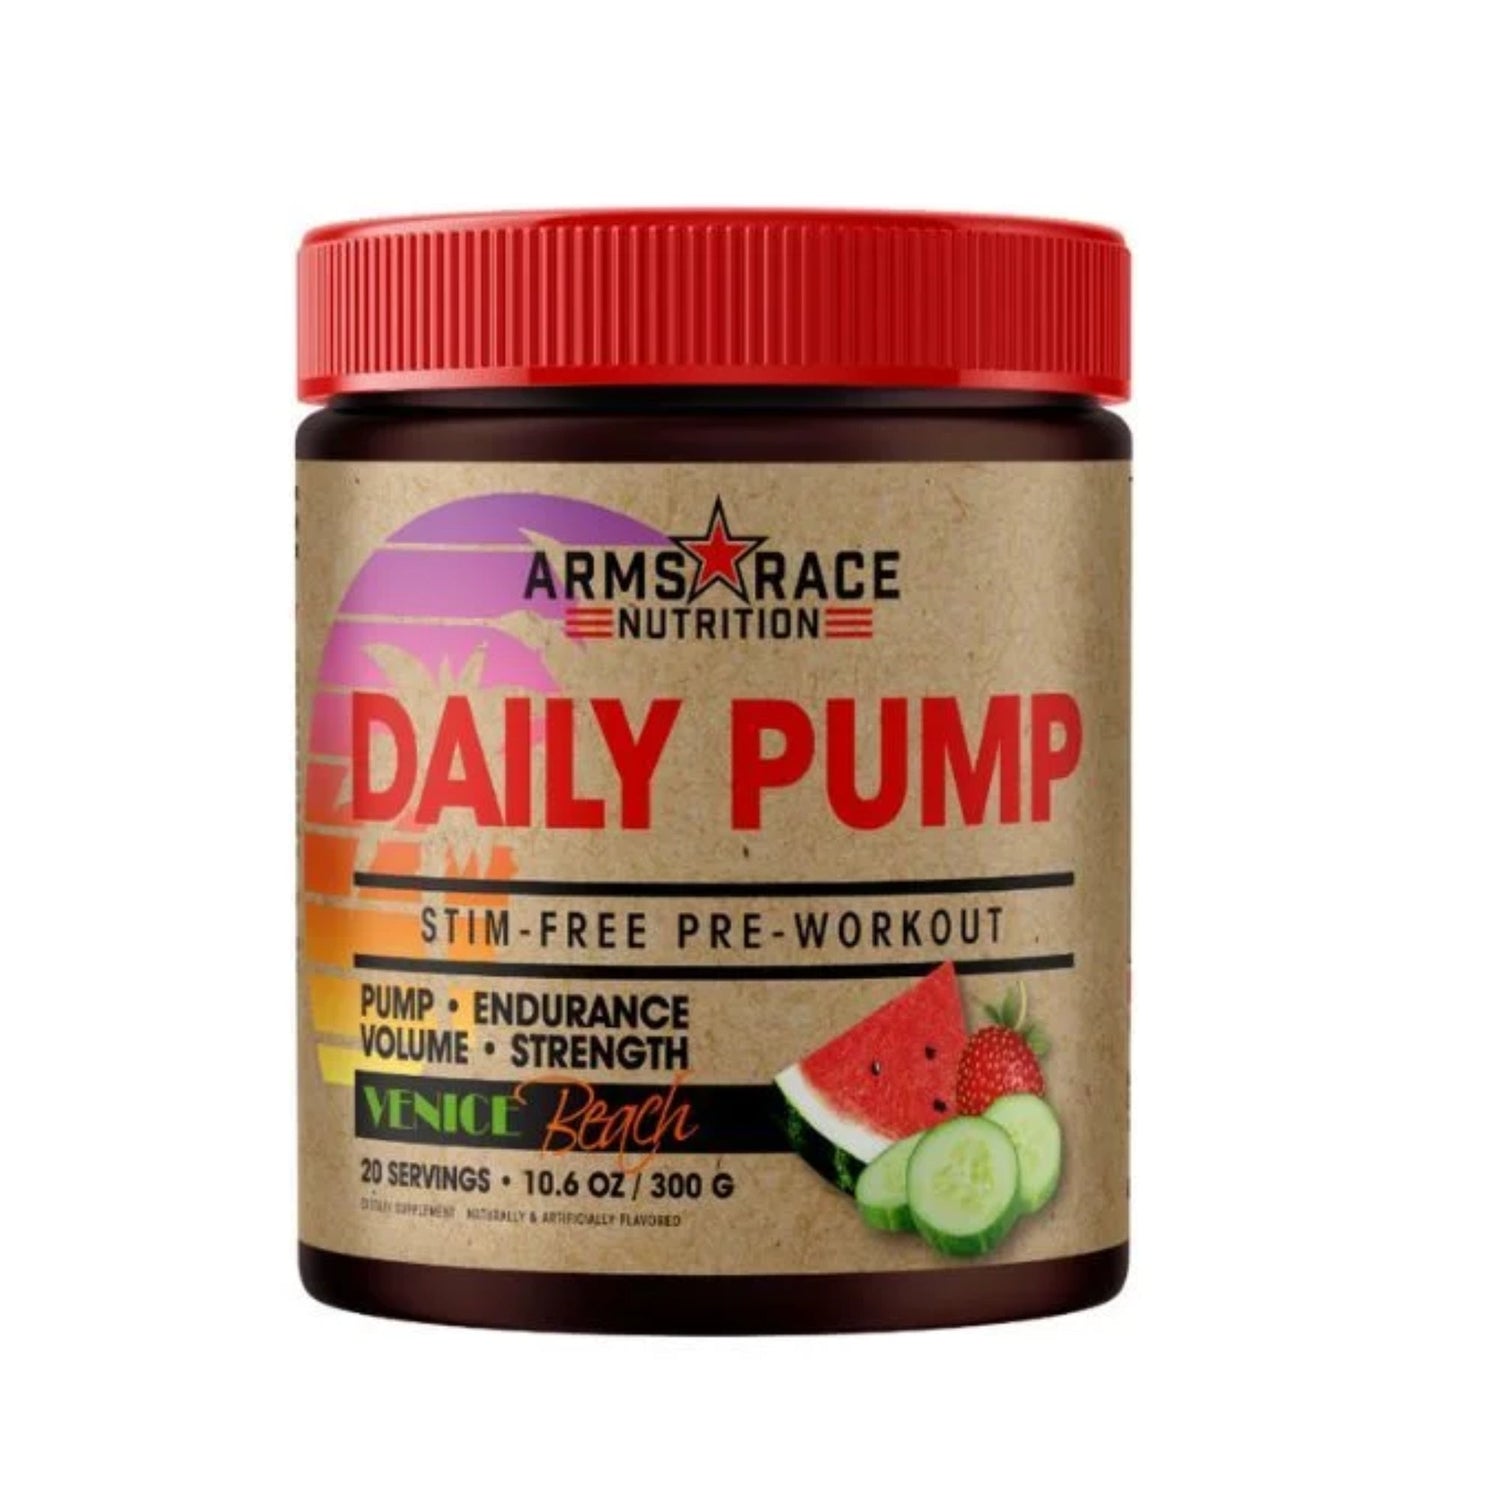 Arms Race Daily Pump Pre Workout Non-Stim